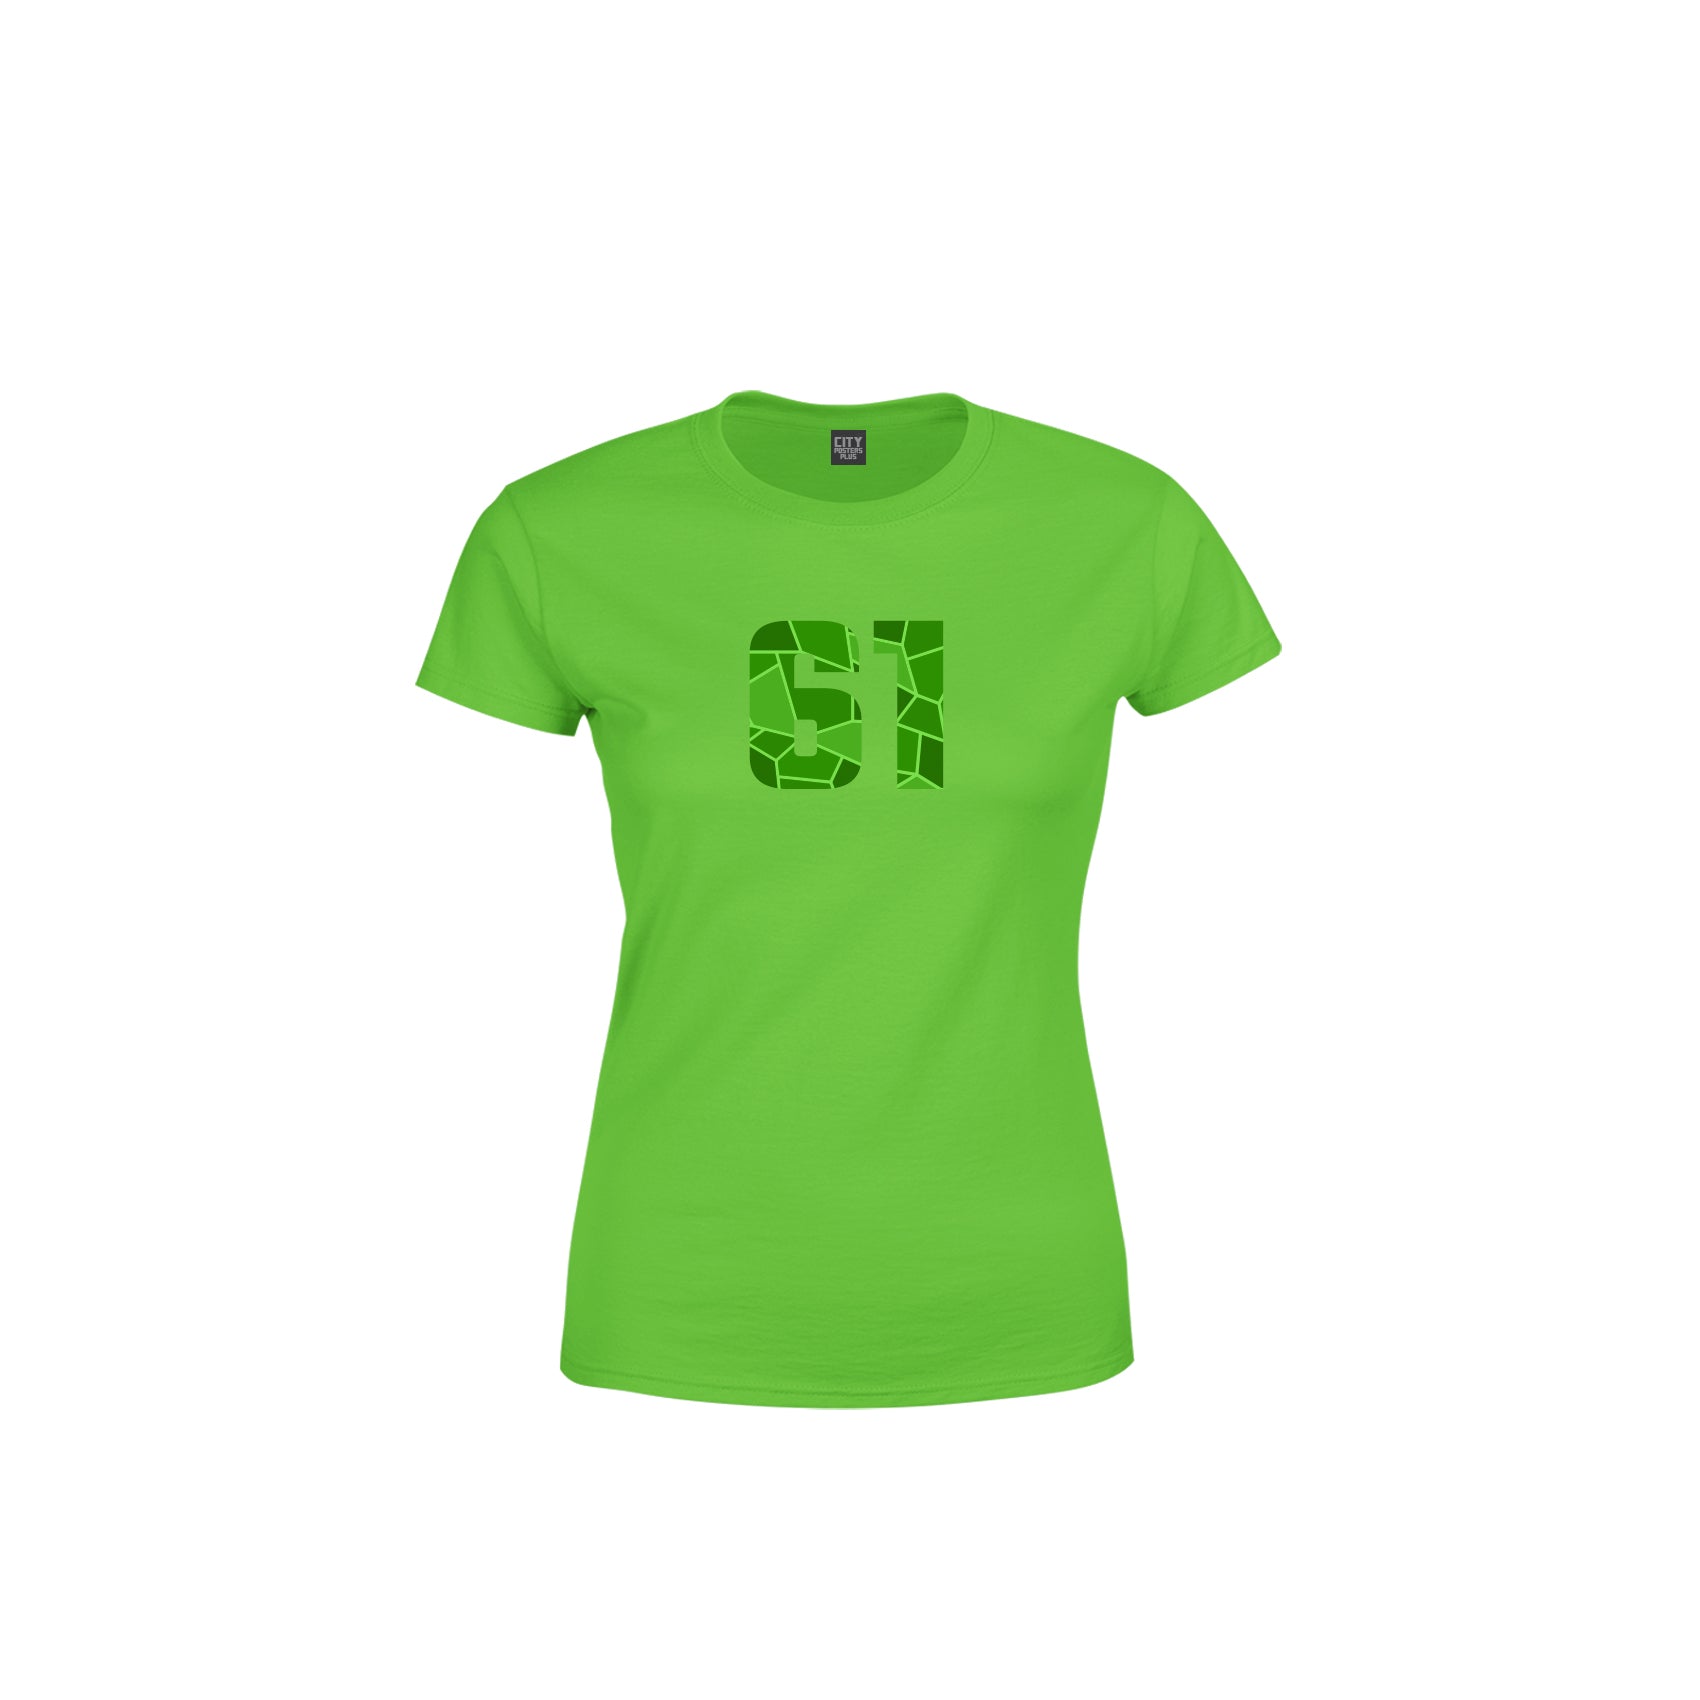 61 Number Women's T-Shirt (Liril Green)